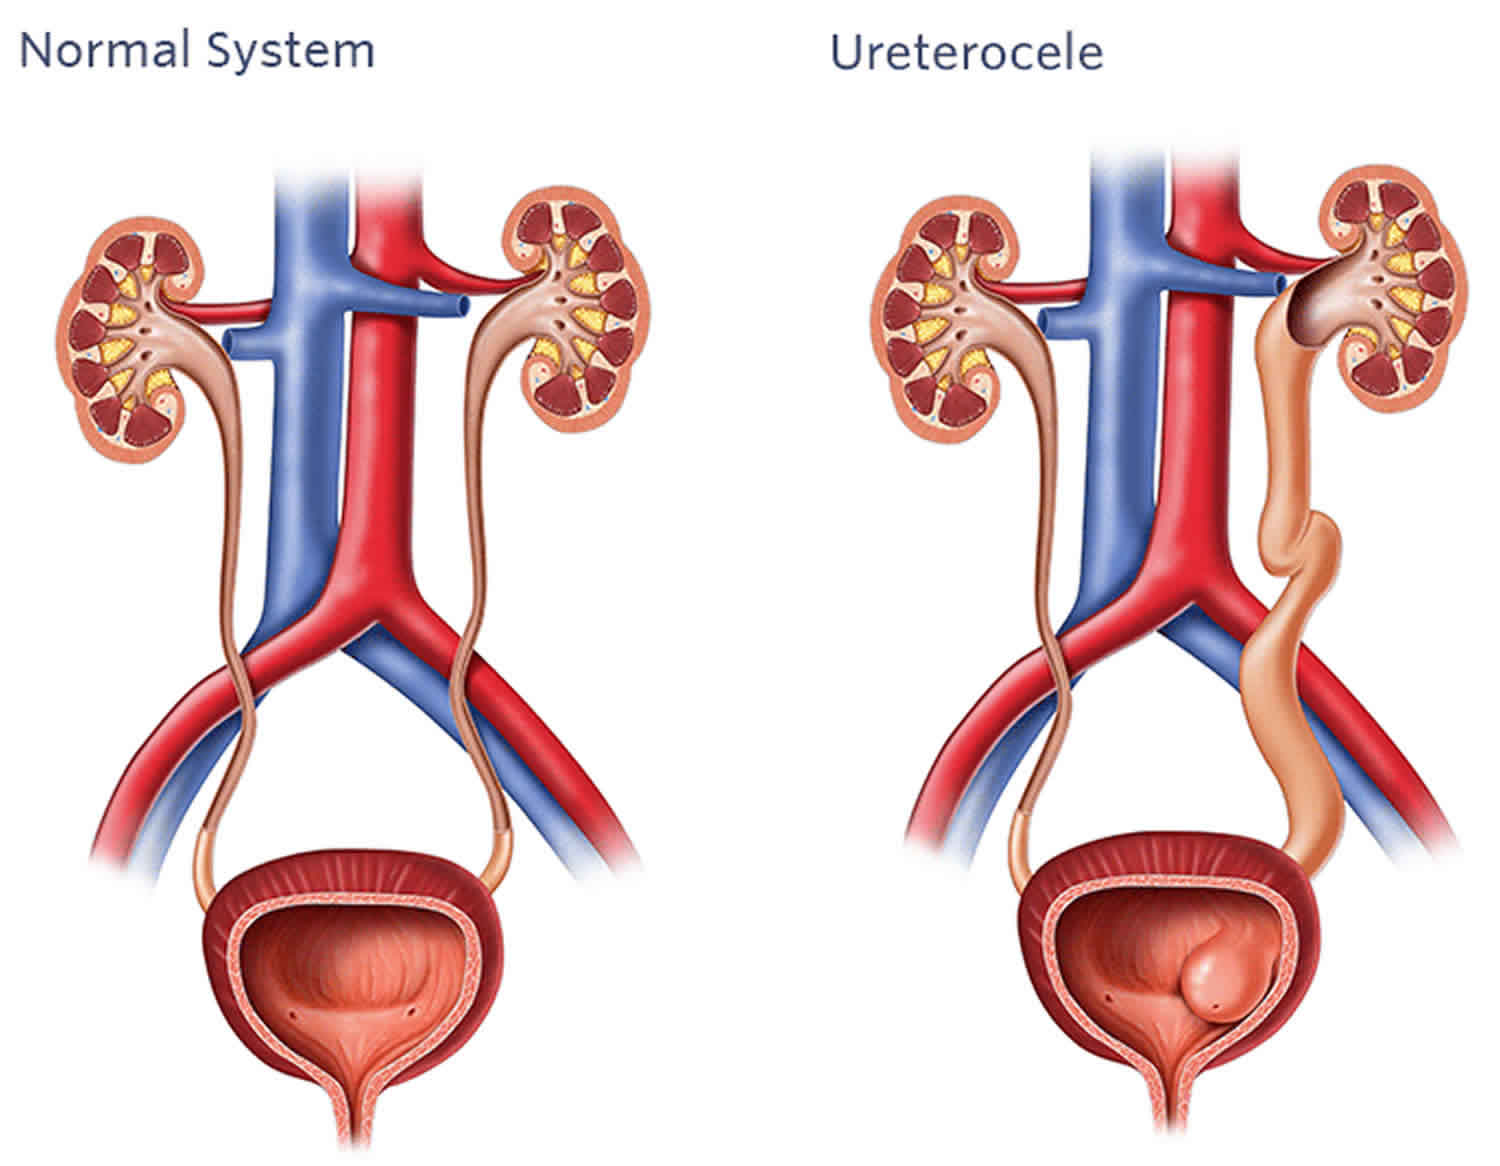 Ureterocele